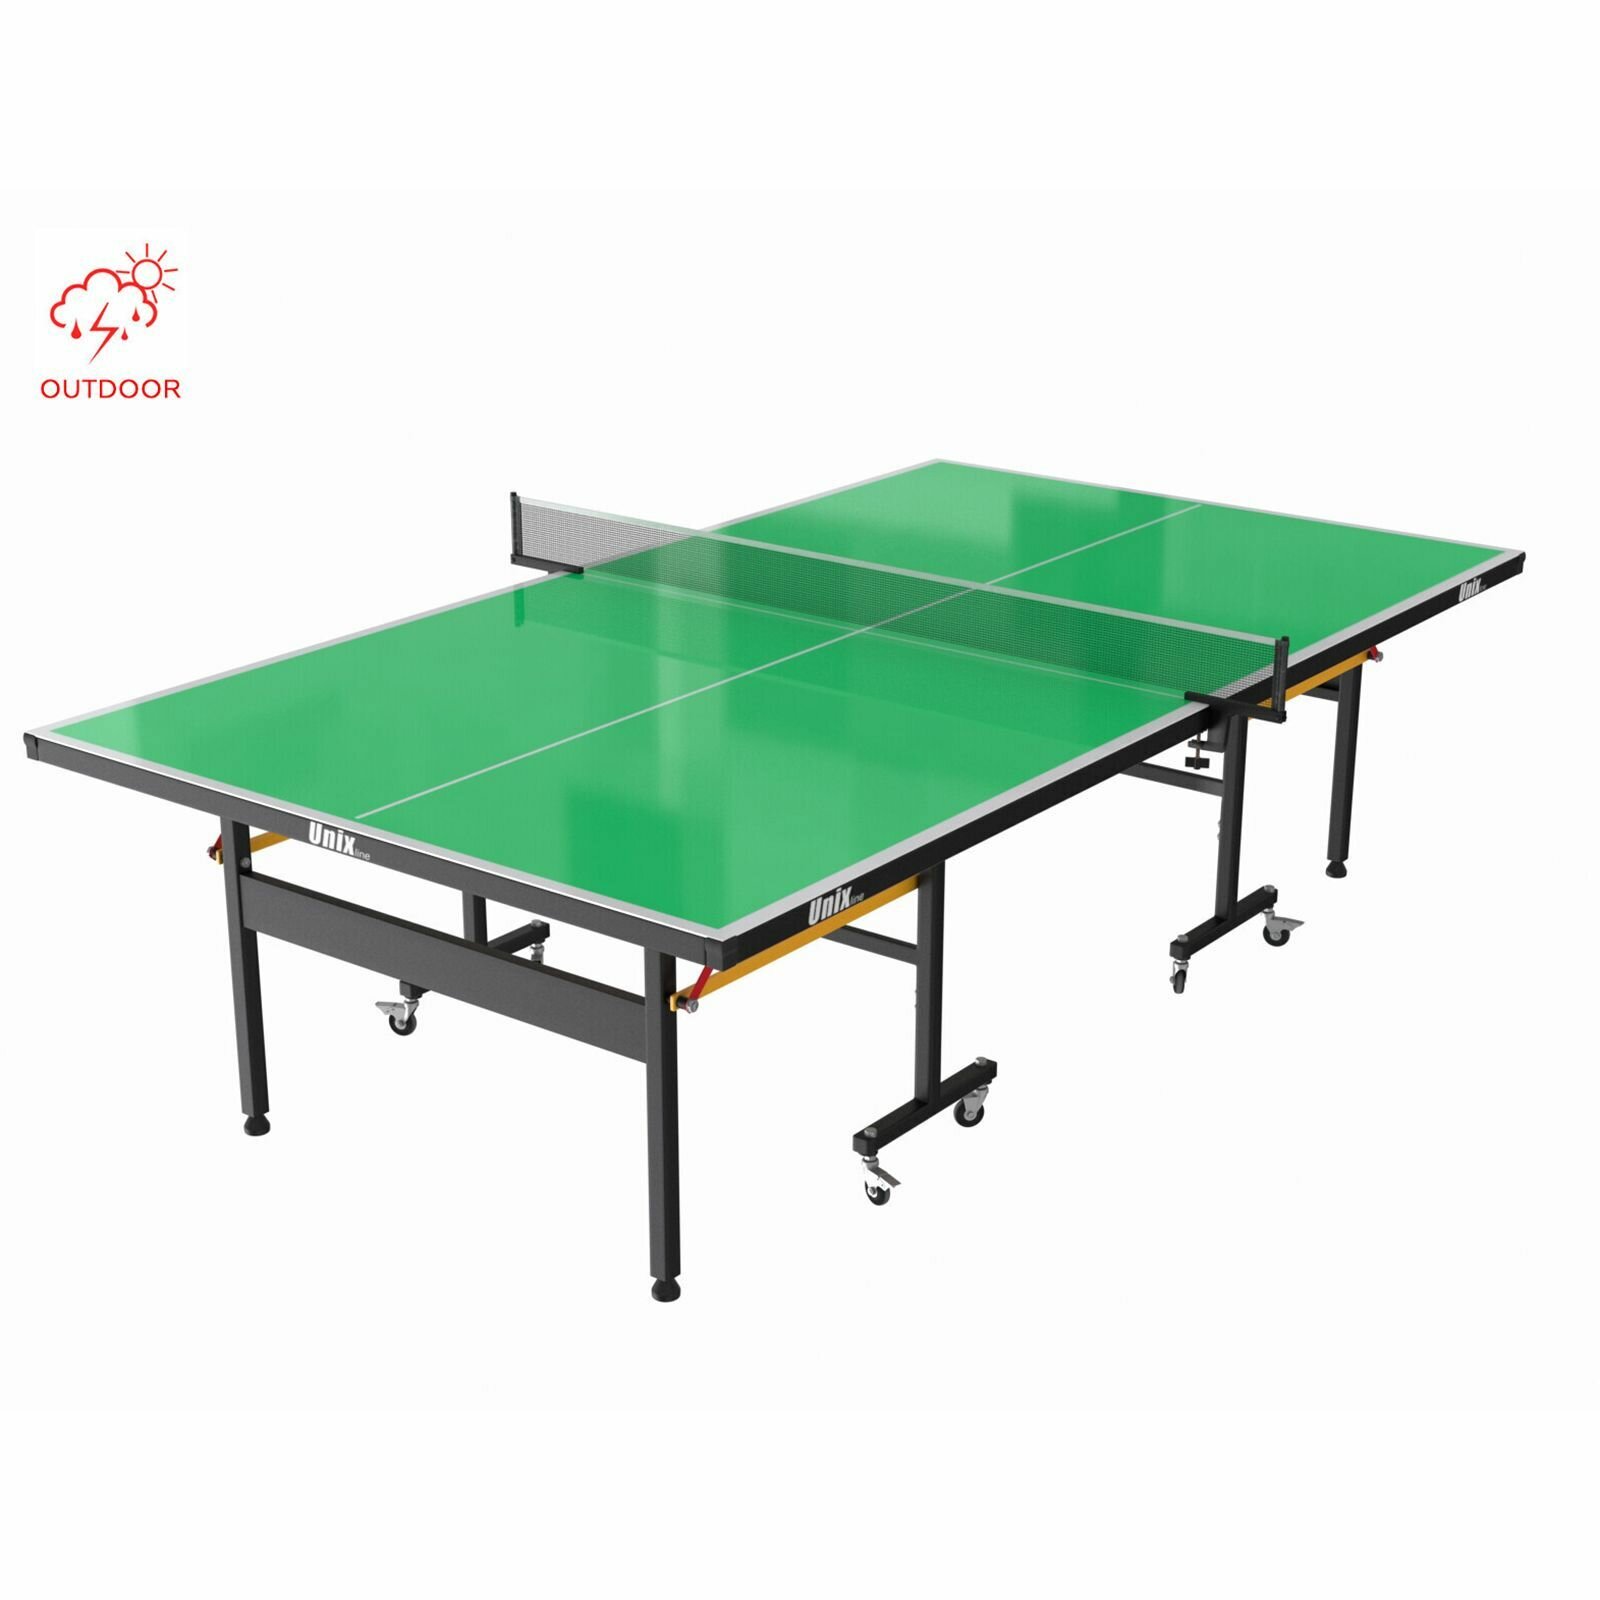 Теннисный стол складной всепогодный для игры в настольный теннис зеленый UNIX Line outdoor полупрофессиональный спортивный с антибликовым покрытием (в комплекте сетка, 2 ракетки, 3 мяча) UNIXLINE